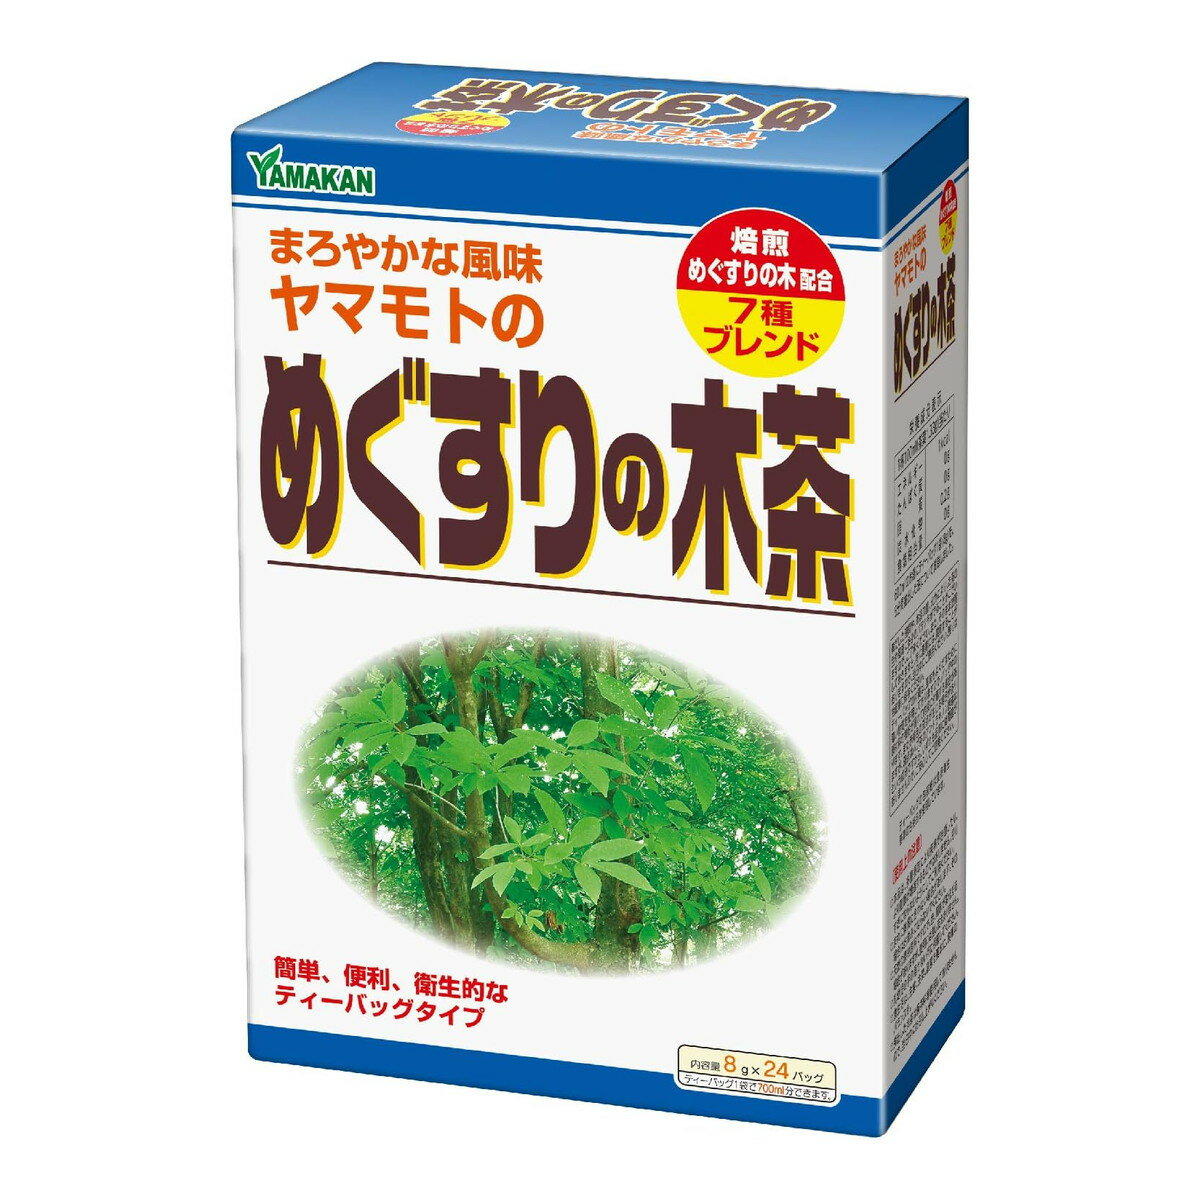 山本漢方製薬 めぐすりの木茶 8g×24